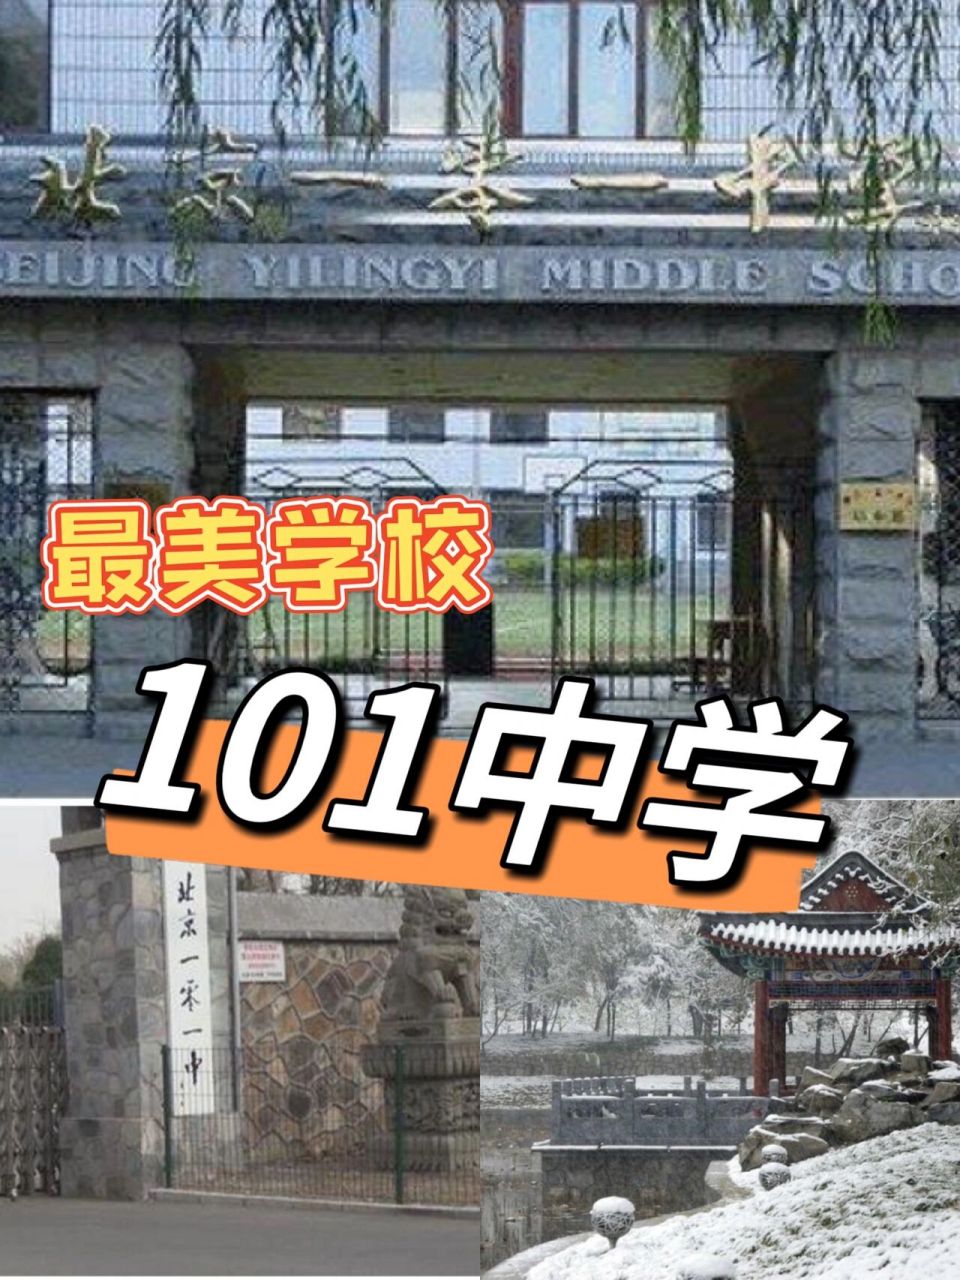 北京101中学校徽图片